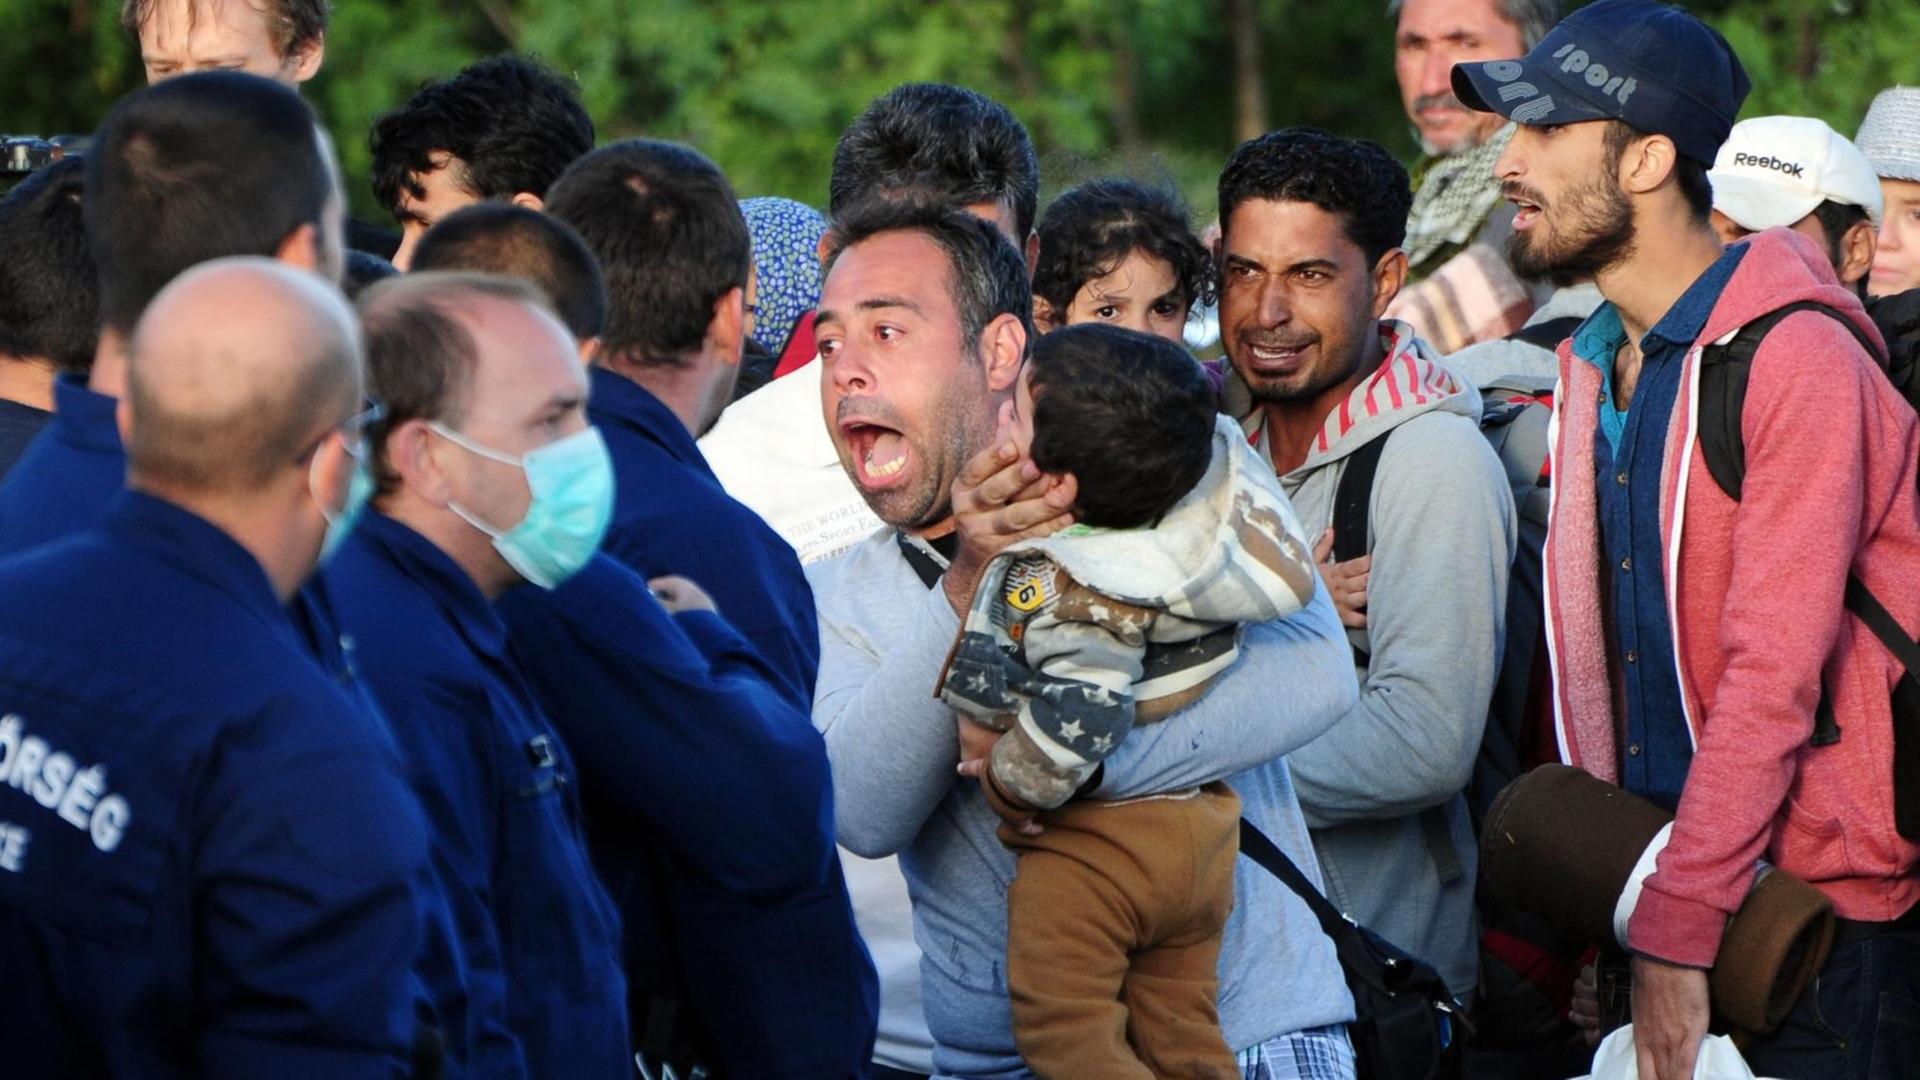 Polizisten in Uniform und zum Teil mit Mundschutz stehen aufgebrachten Flüchtlingen gegenüber. Ein Mann schreit die Polizisten an, hält ein Kind auf dem Arm.